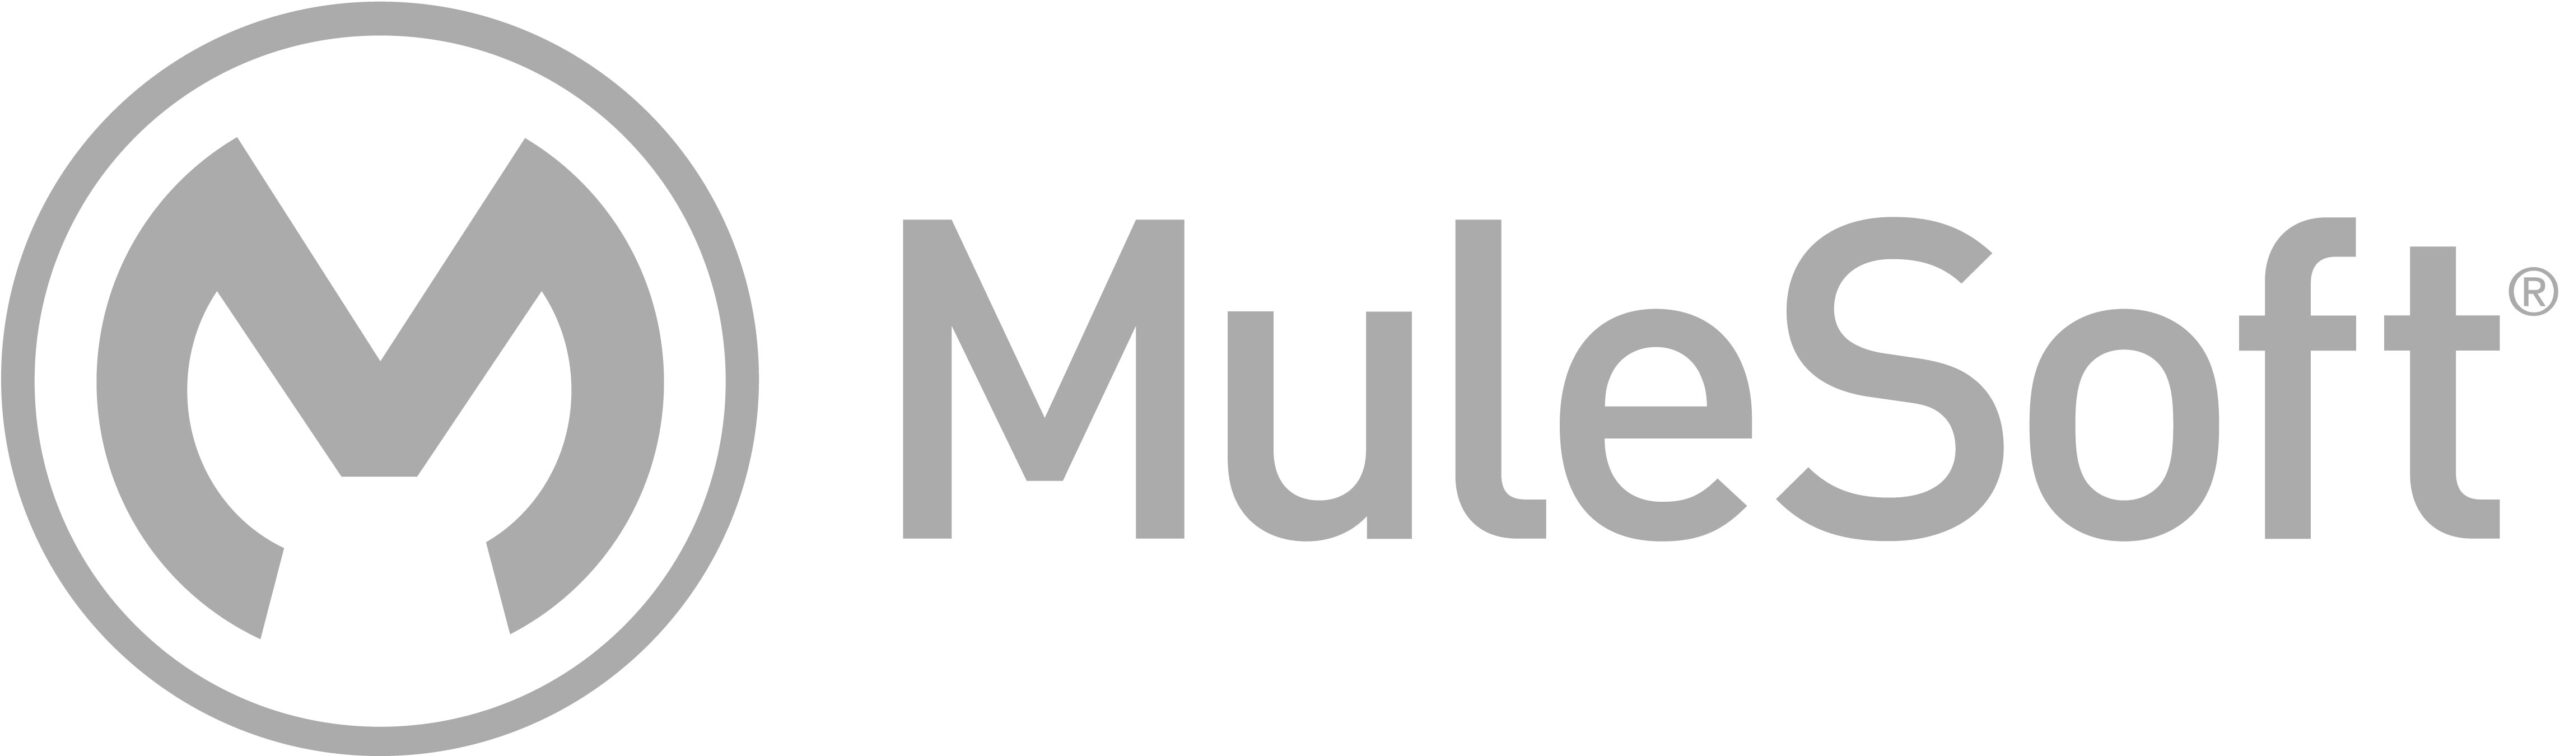 mulesoft logo gray